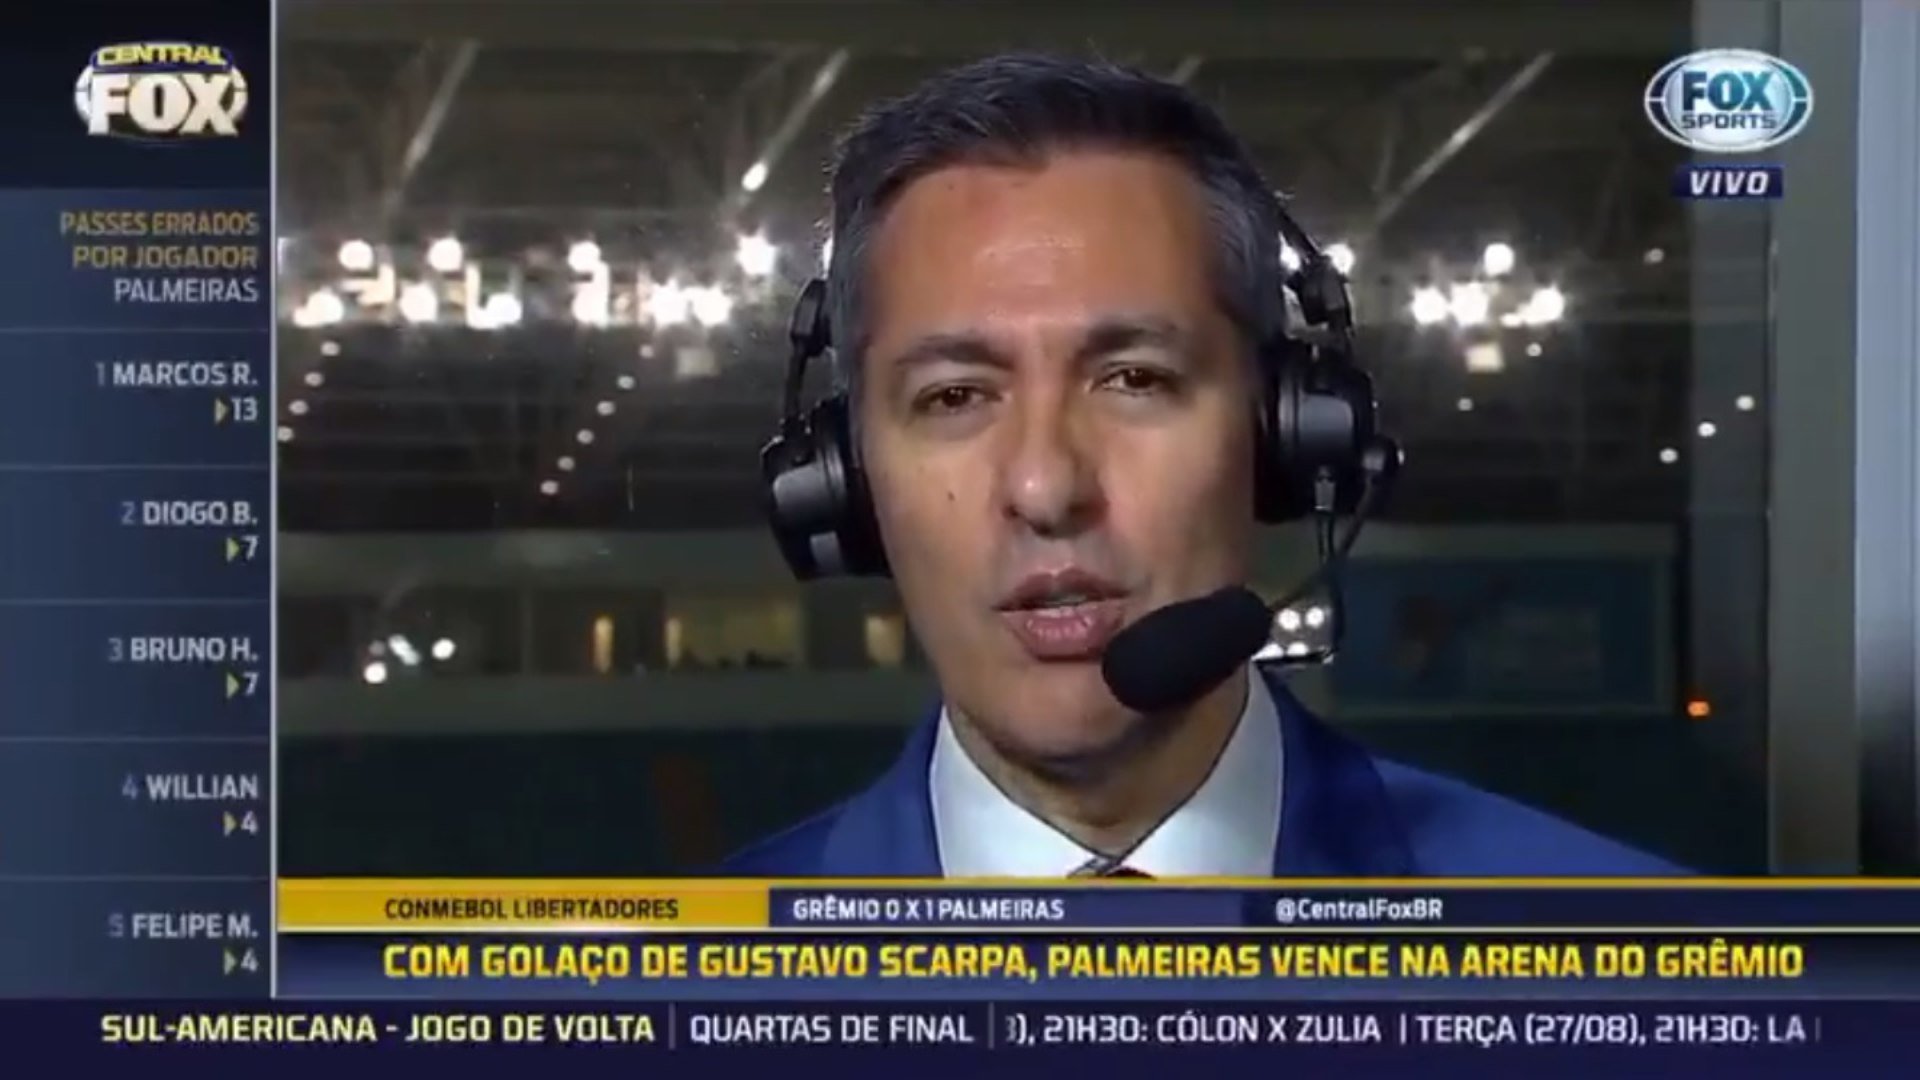 Após partida entre Grêmio e Palmeiras pela Libertadores, áudio de Nivaldo Prieto acabou vazando na transmissão do Fox Sports: "Grita comigo não! Eu quebro a sua cara". O narrador provavelmente estava falando com alguém da produção.